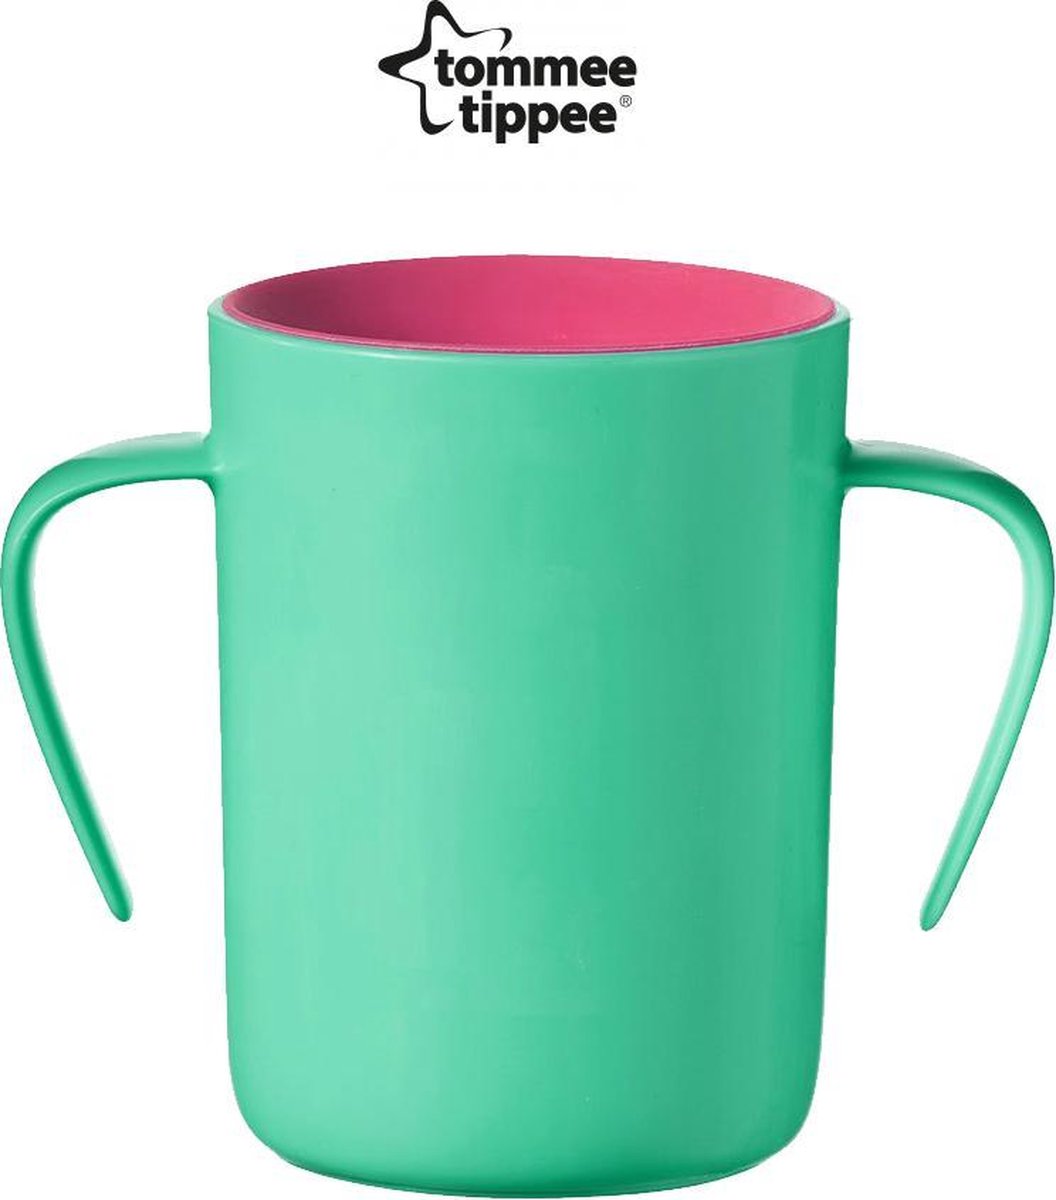 Tommee Tippee Easiflow 360° Drinkbeker Groen 6m+ - 200 ml